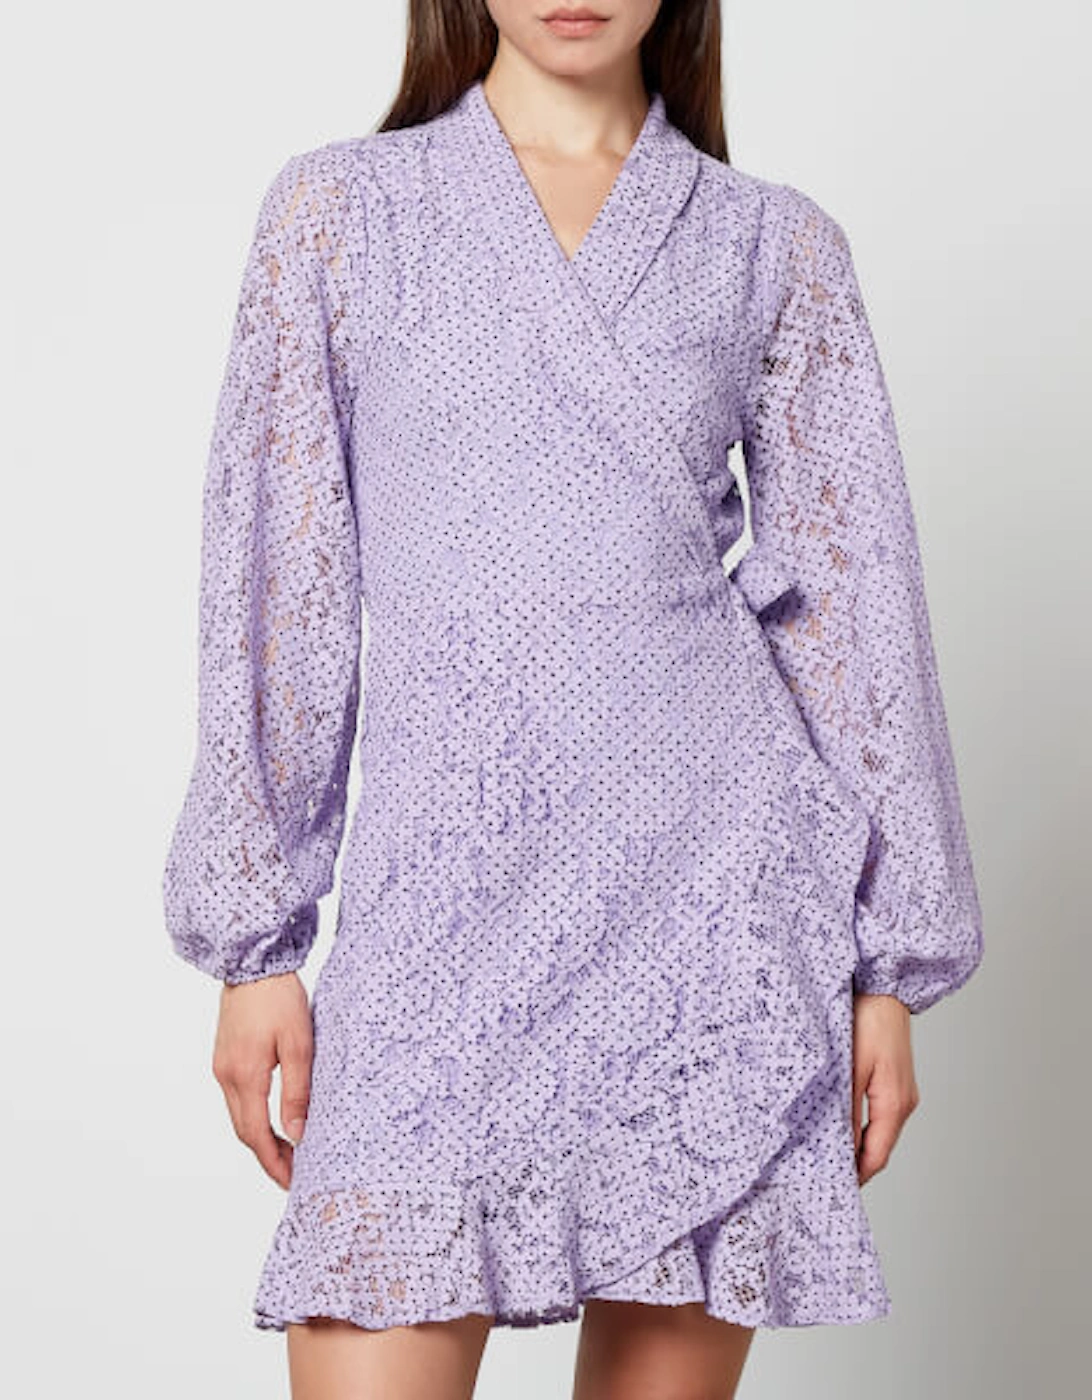 Lindacras Cotton-Blend Guipure Lace Dress, 2 of 1